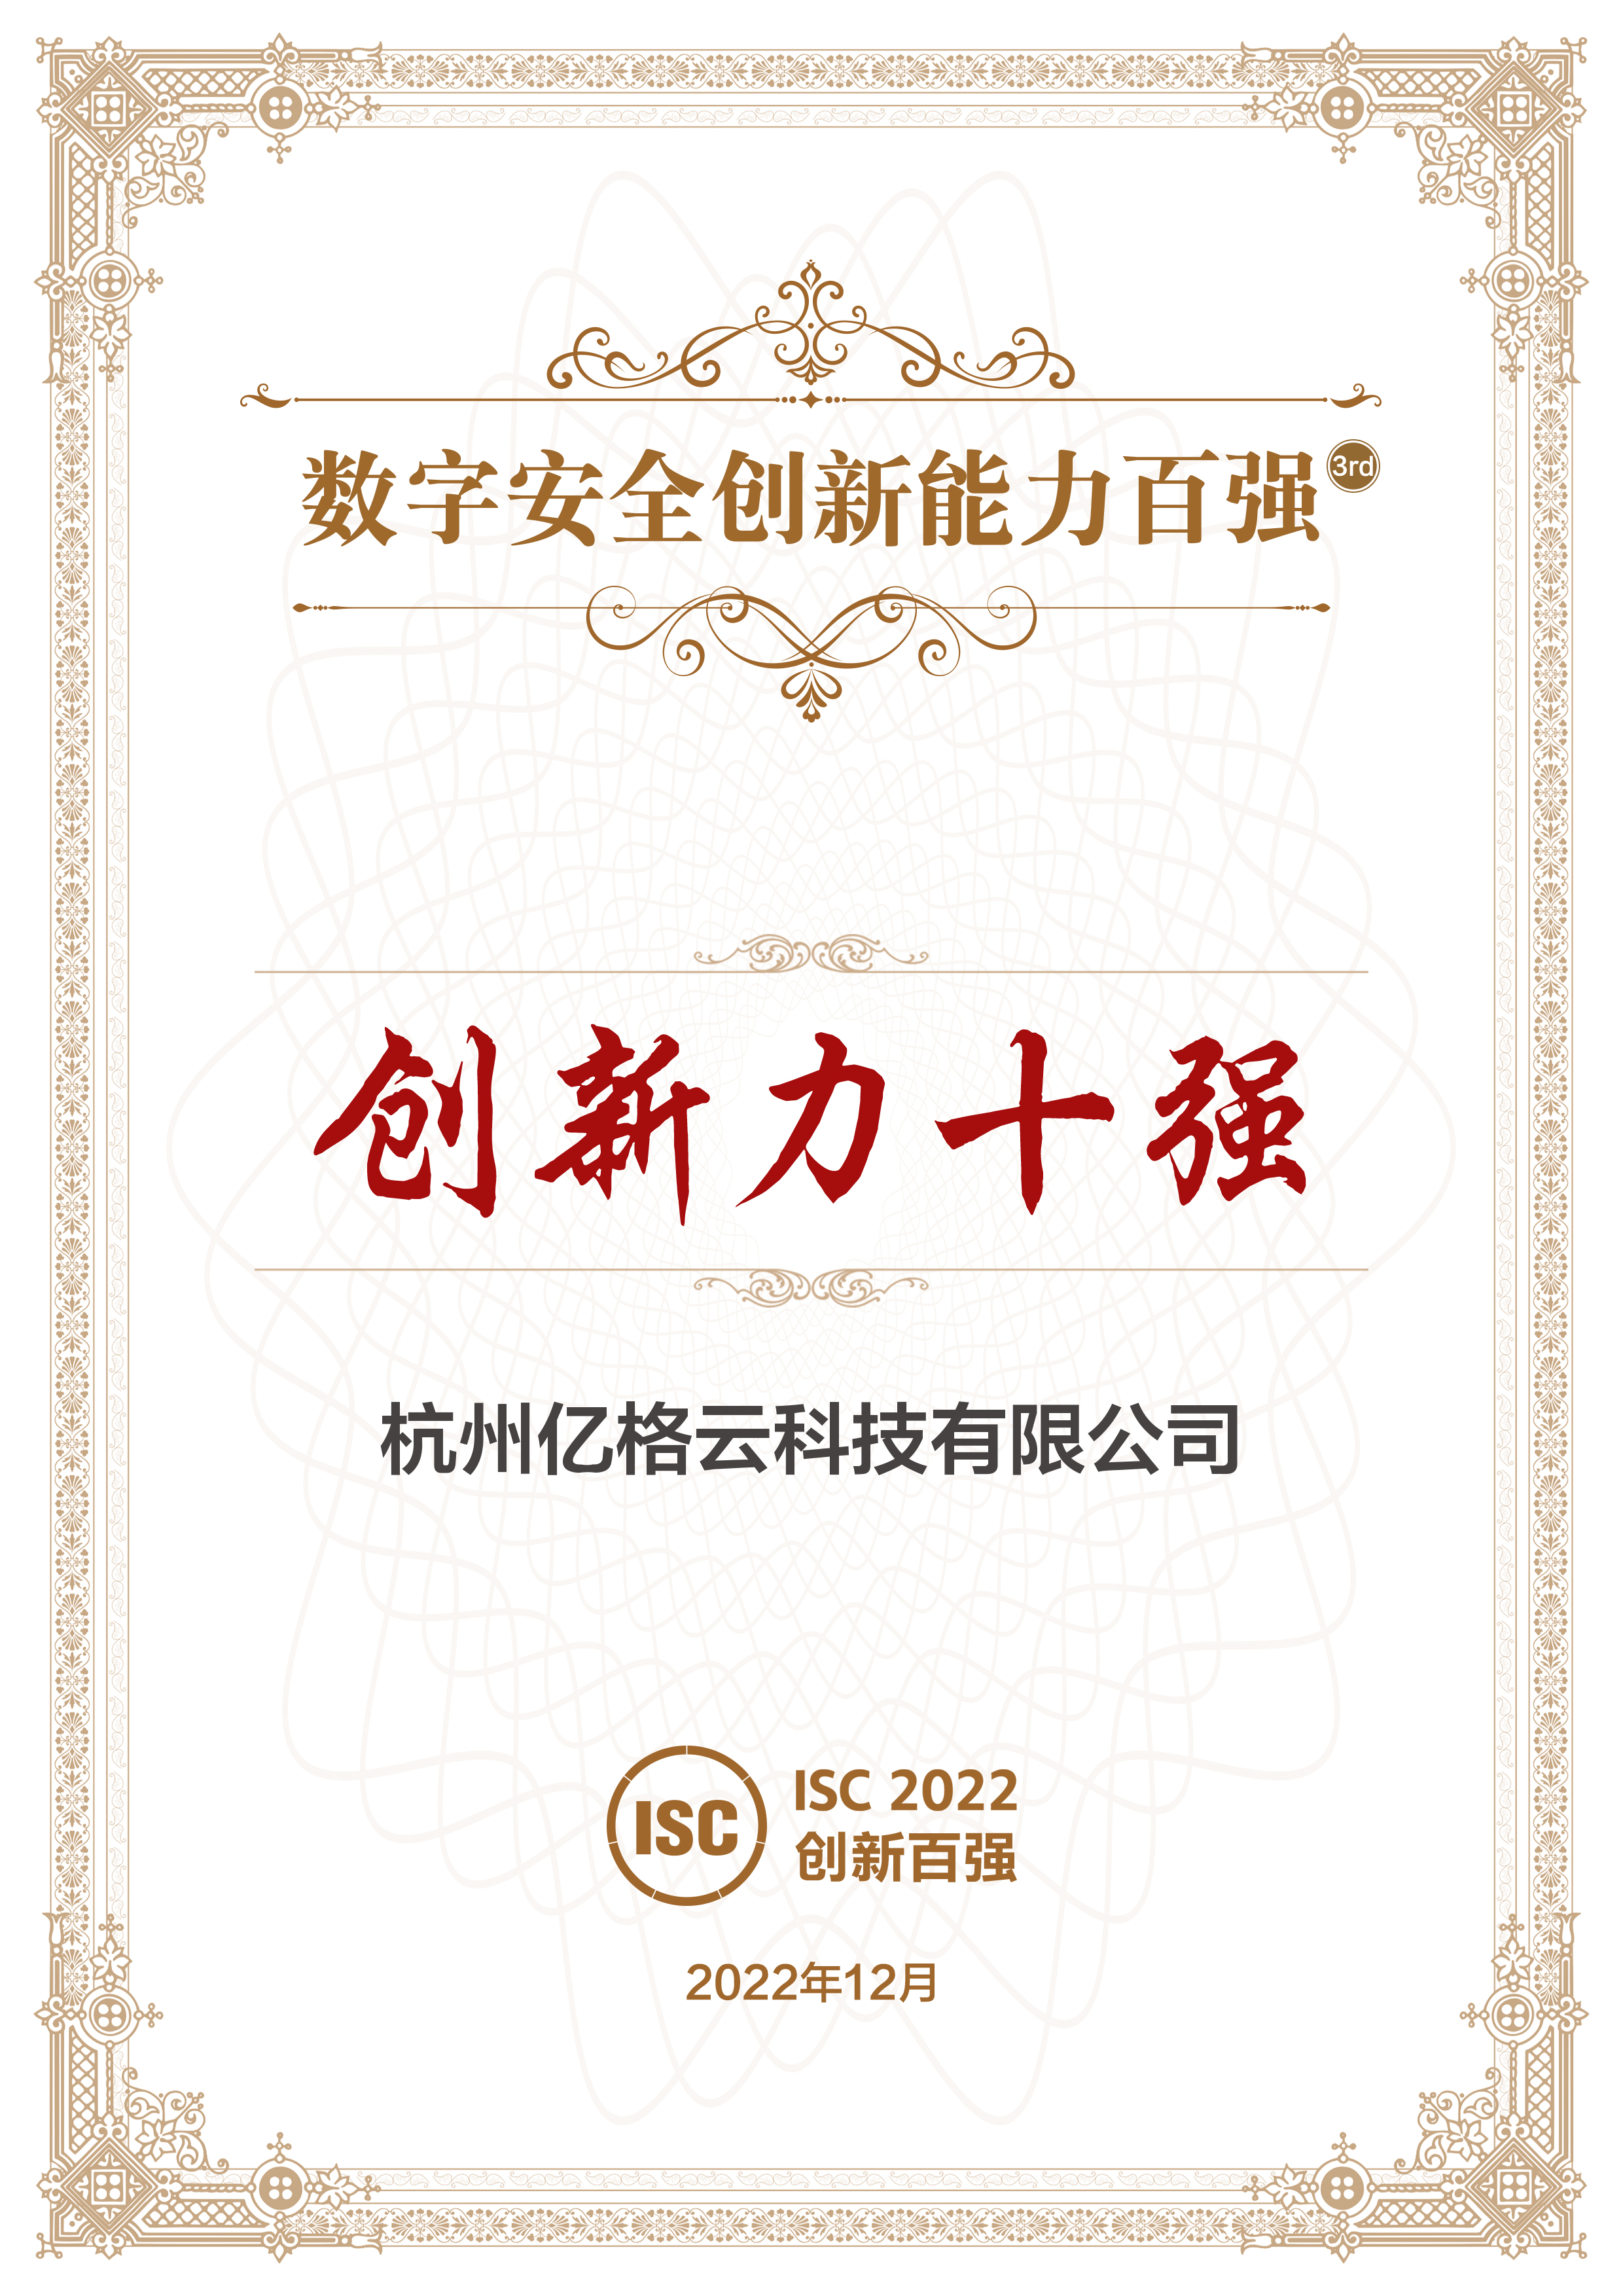 亿格云荣获ISC“创新力十强”、“数字安全创新能力百强”、“典型案例报告入选”